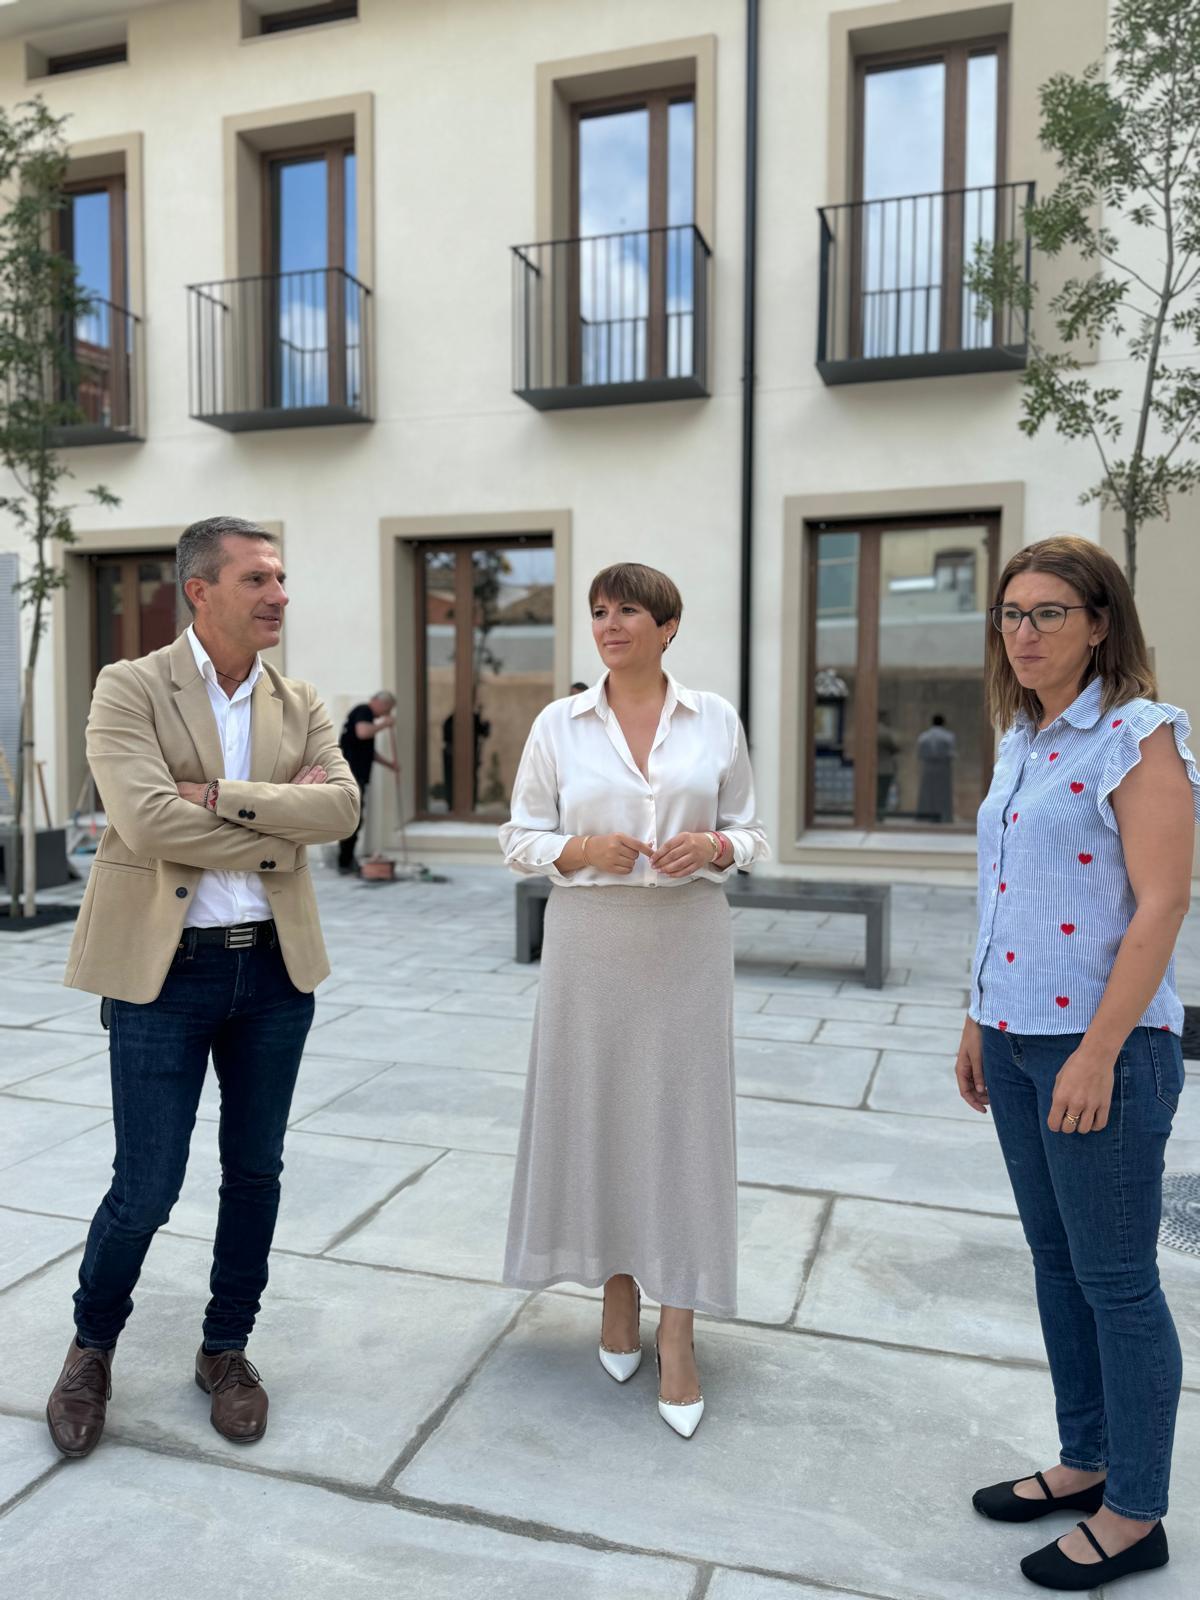 La alcaldesa Amparo Orts visita la nueva residencia de estudiantes de Moncada.